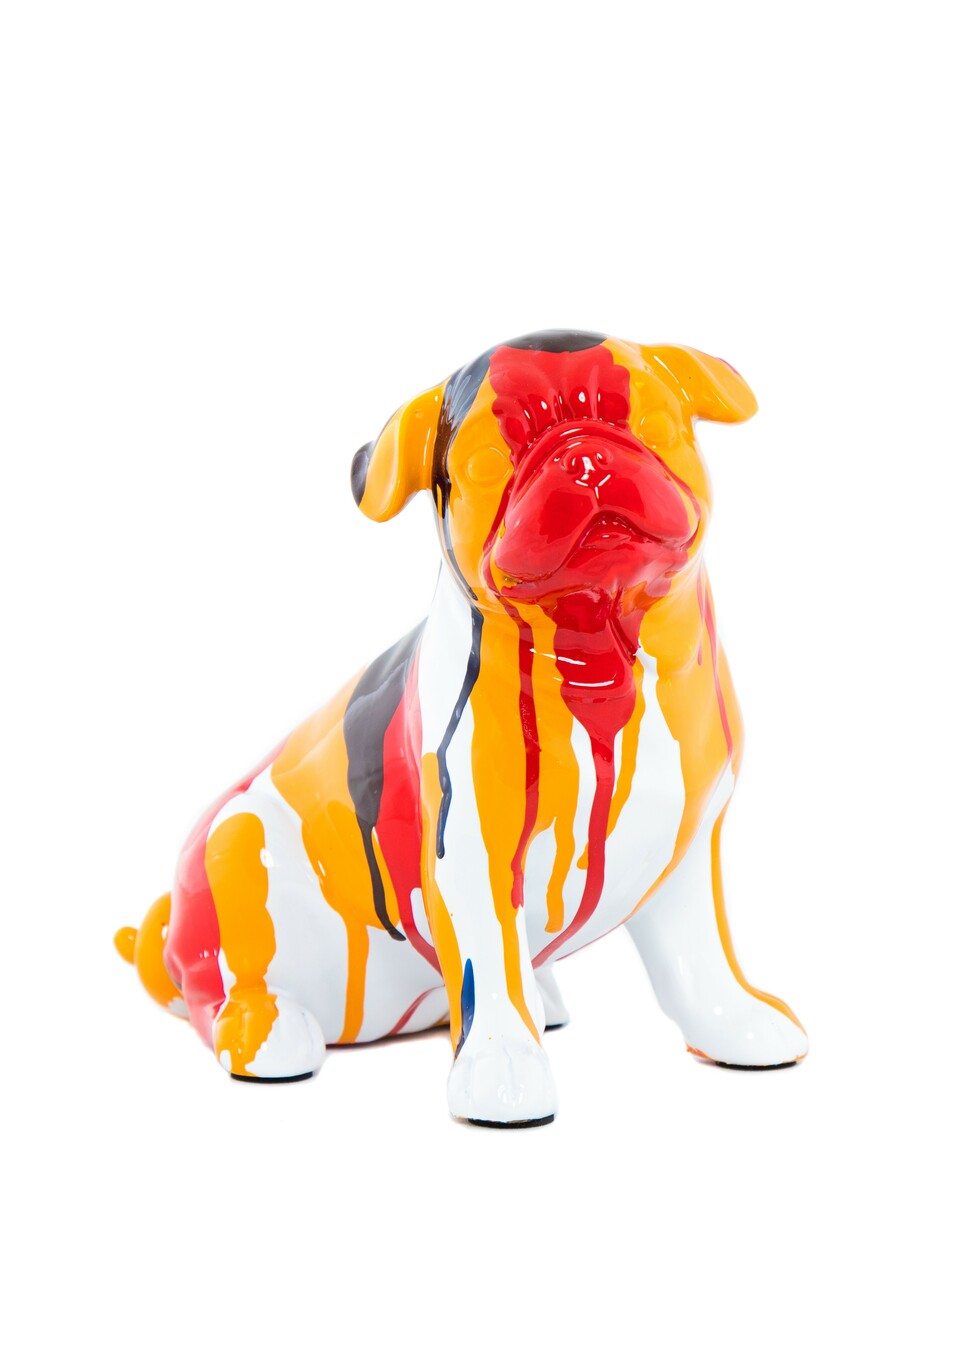 Bulldog Sitting Platter Art Dog